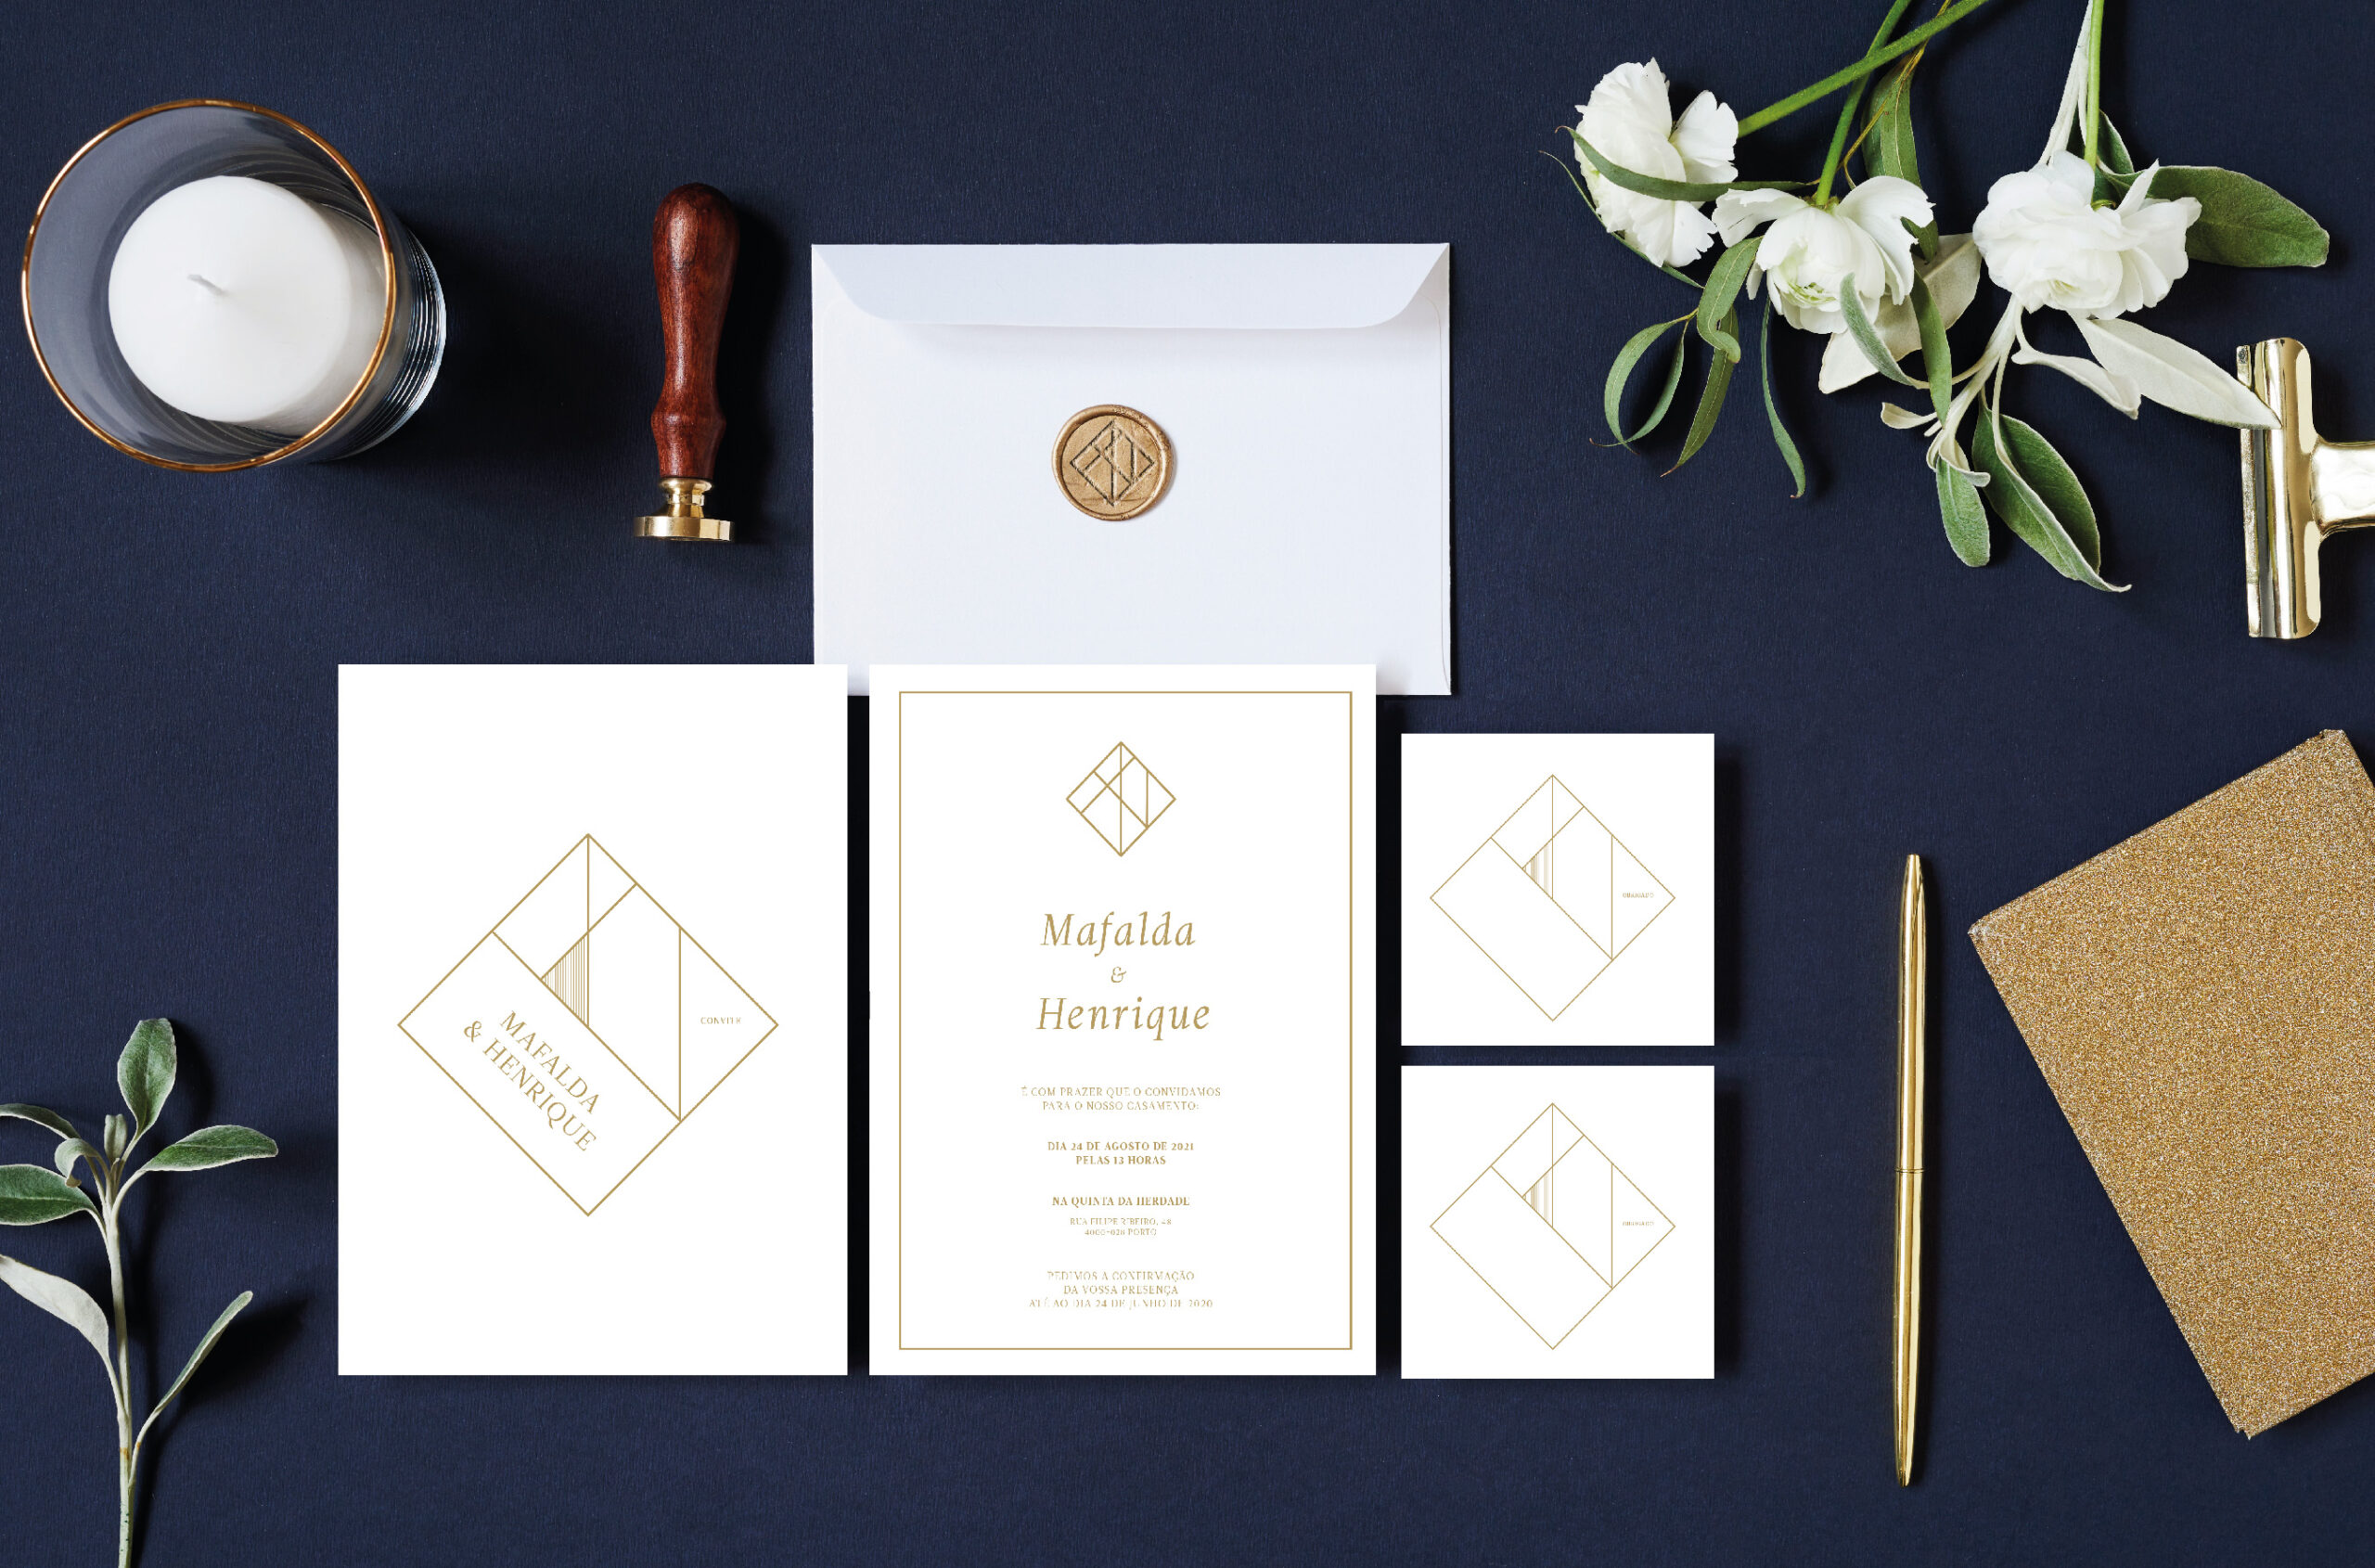 Convites de Casamentos com detalhes dourados e envelope branco com lacre dourado